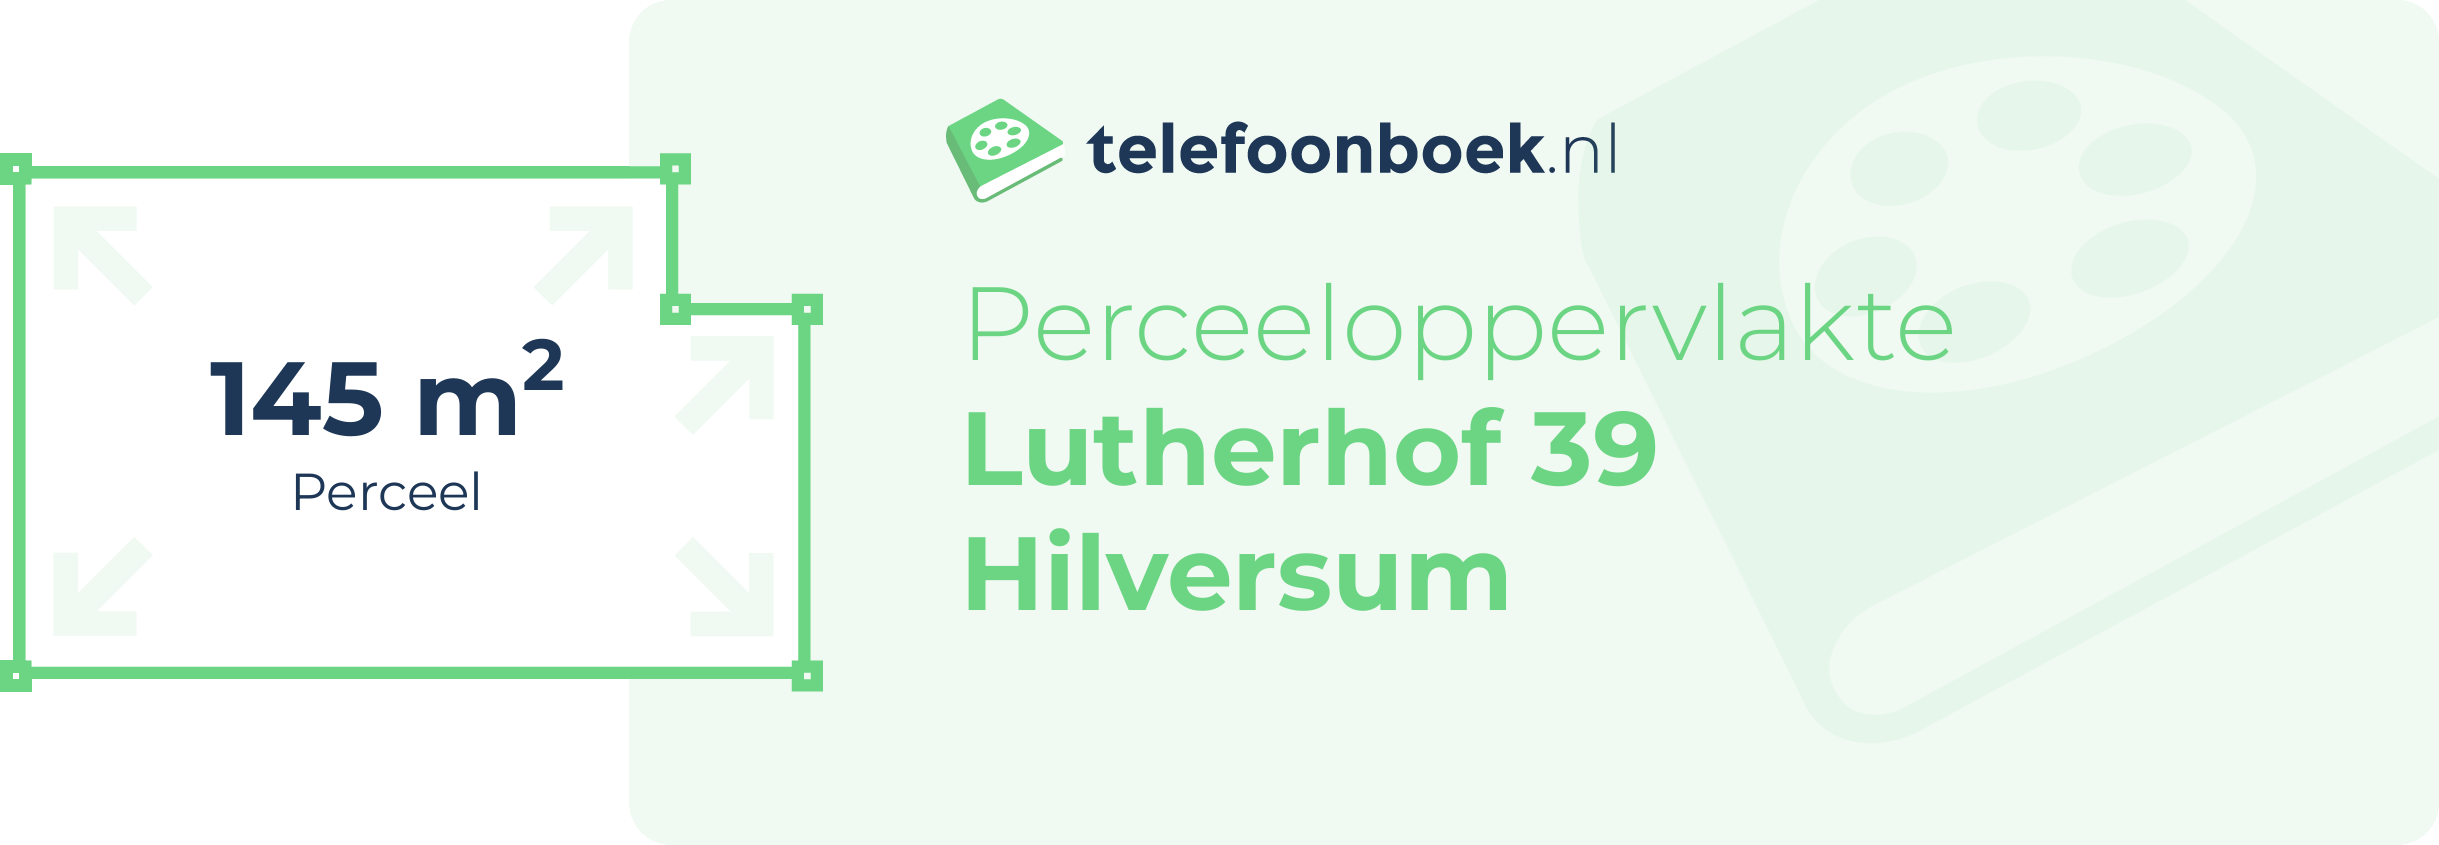 Perceeloppervlakte Lutherhof 39 Hilversum